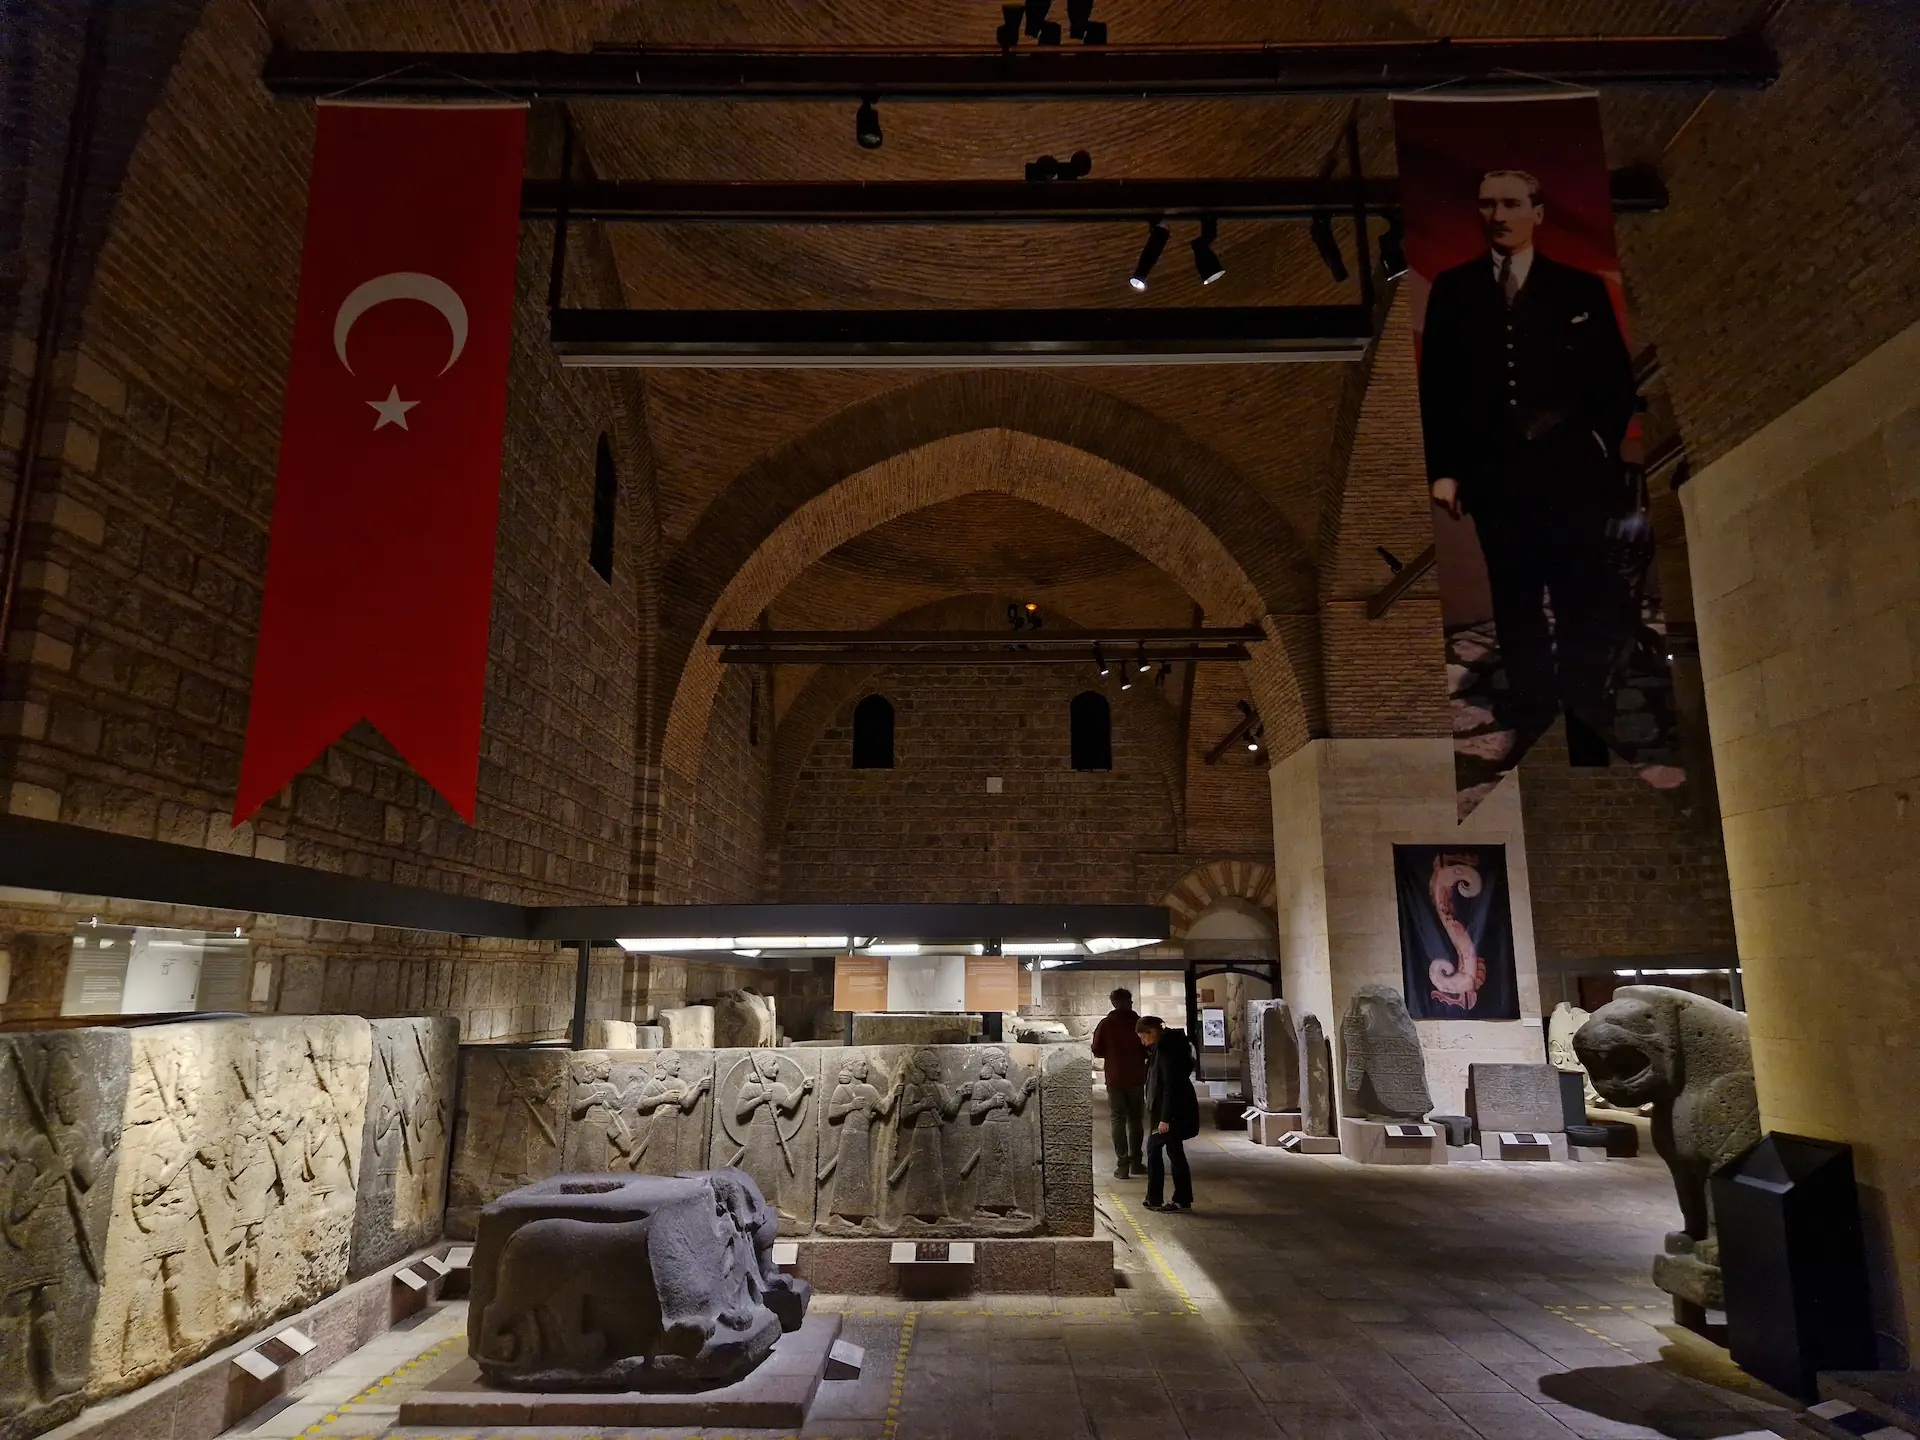 La salle centrale du musée. Sur le sol, des statues et sculptures. On voit des bannières accrochées au plafond avec sur la première, le drapeau turc, et sur la deuxième, un portrait d'Atatürk.